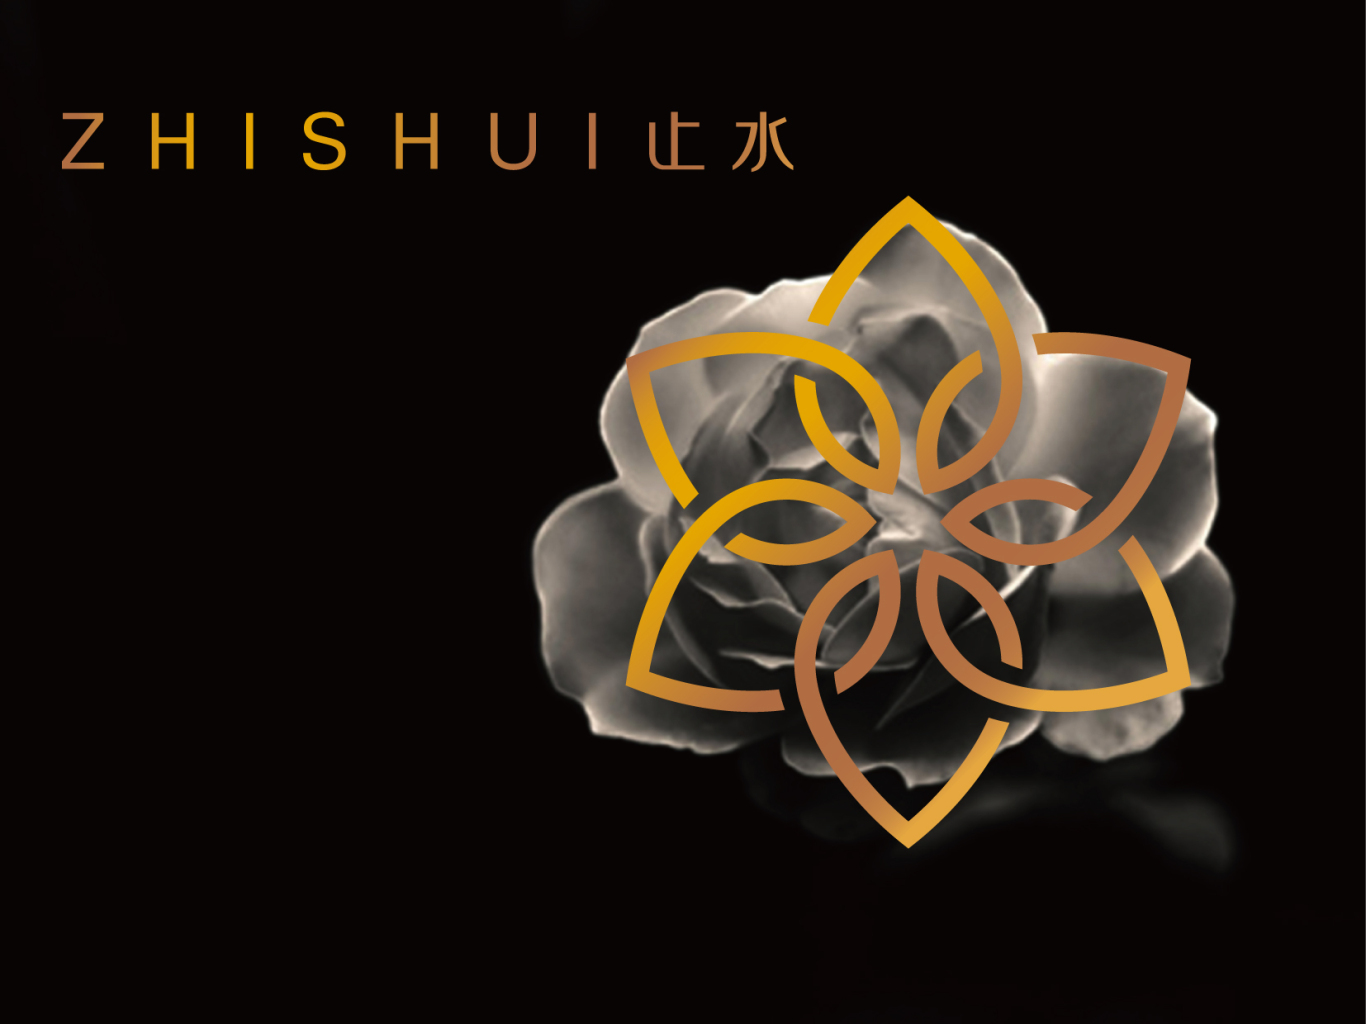 zhishui 品牌logo设计图4